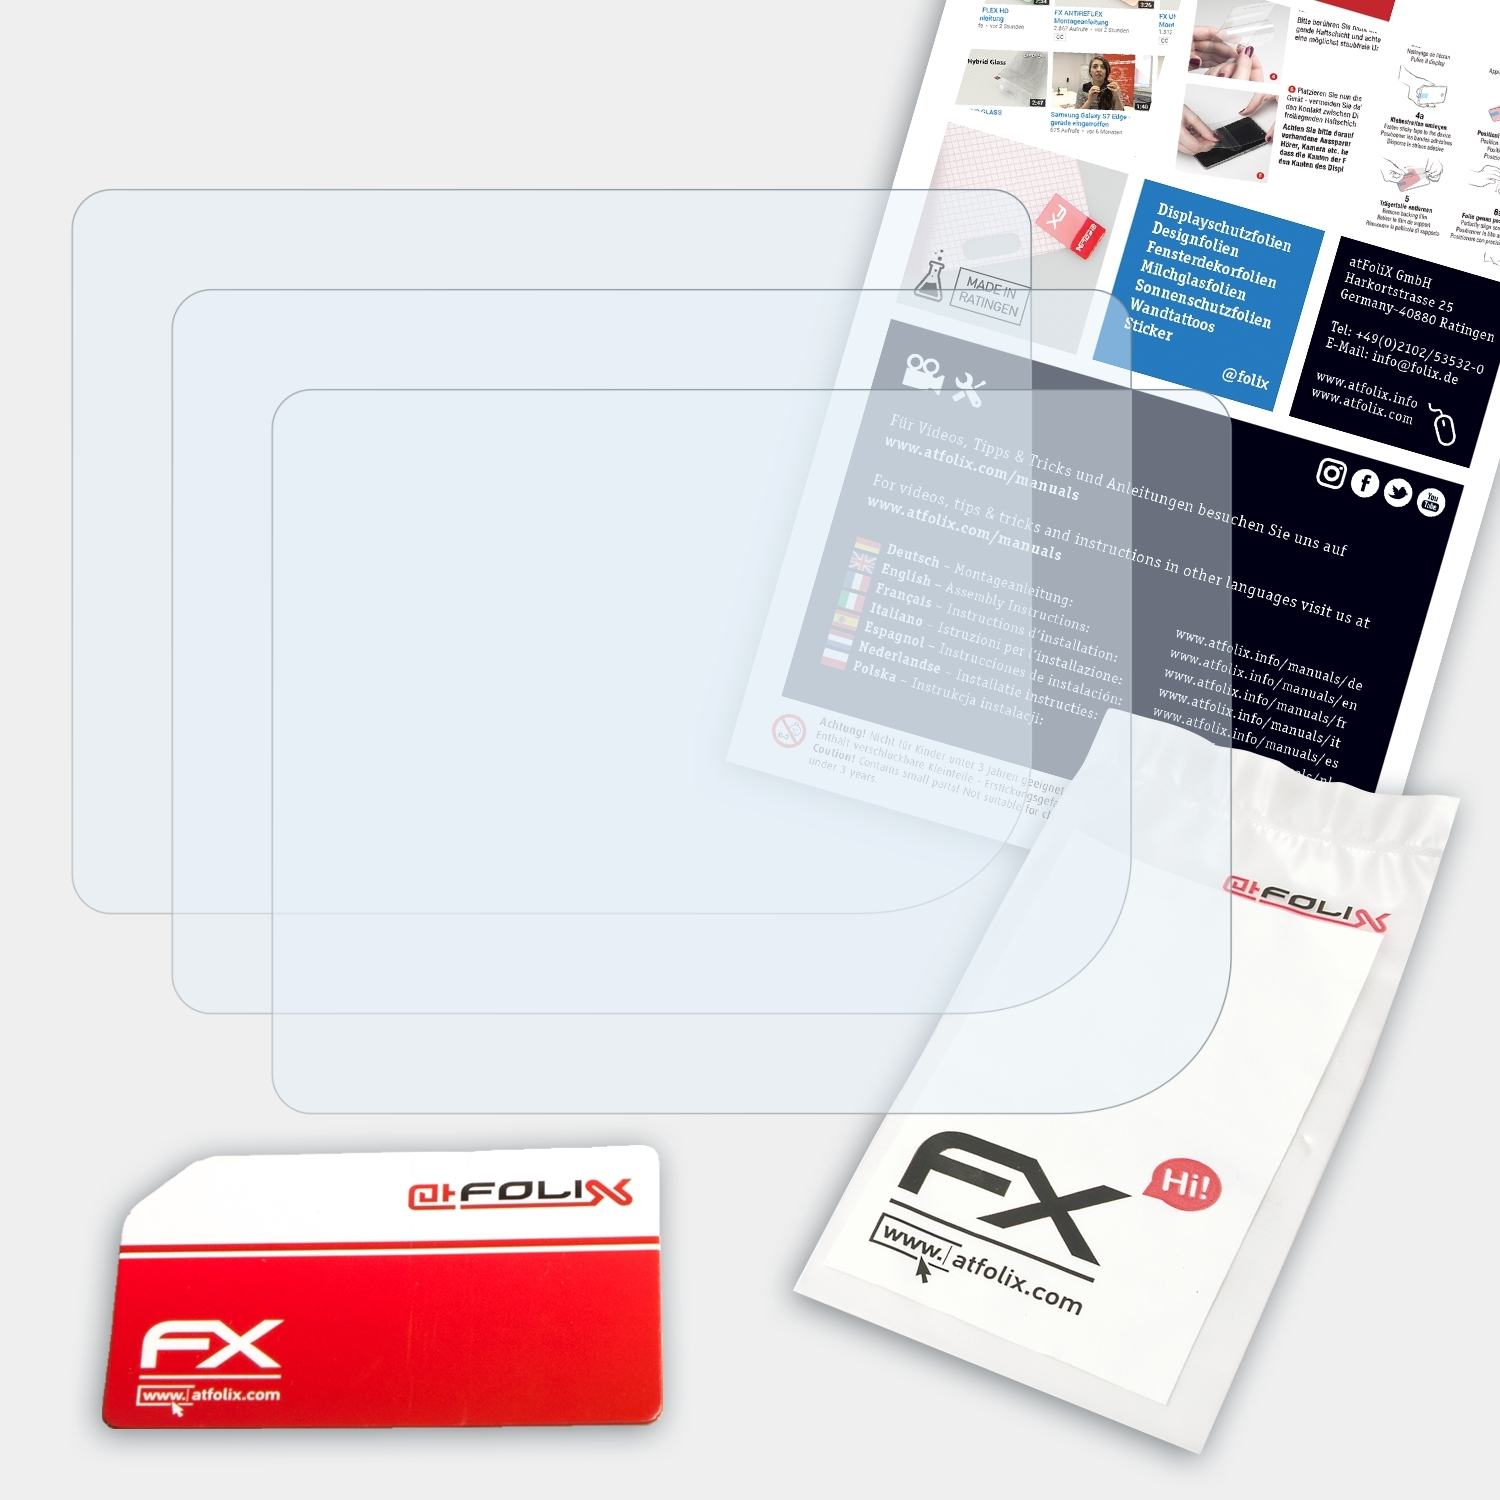 ATFOLIX 3x FX-Clear GameBoy) Displayschutz(für Nintendo